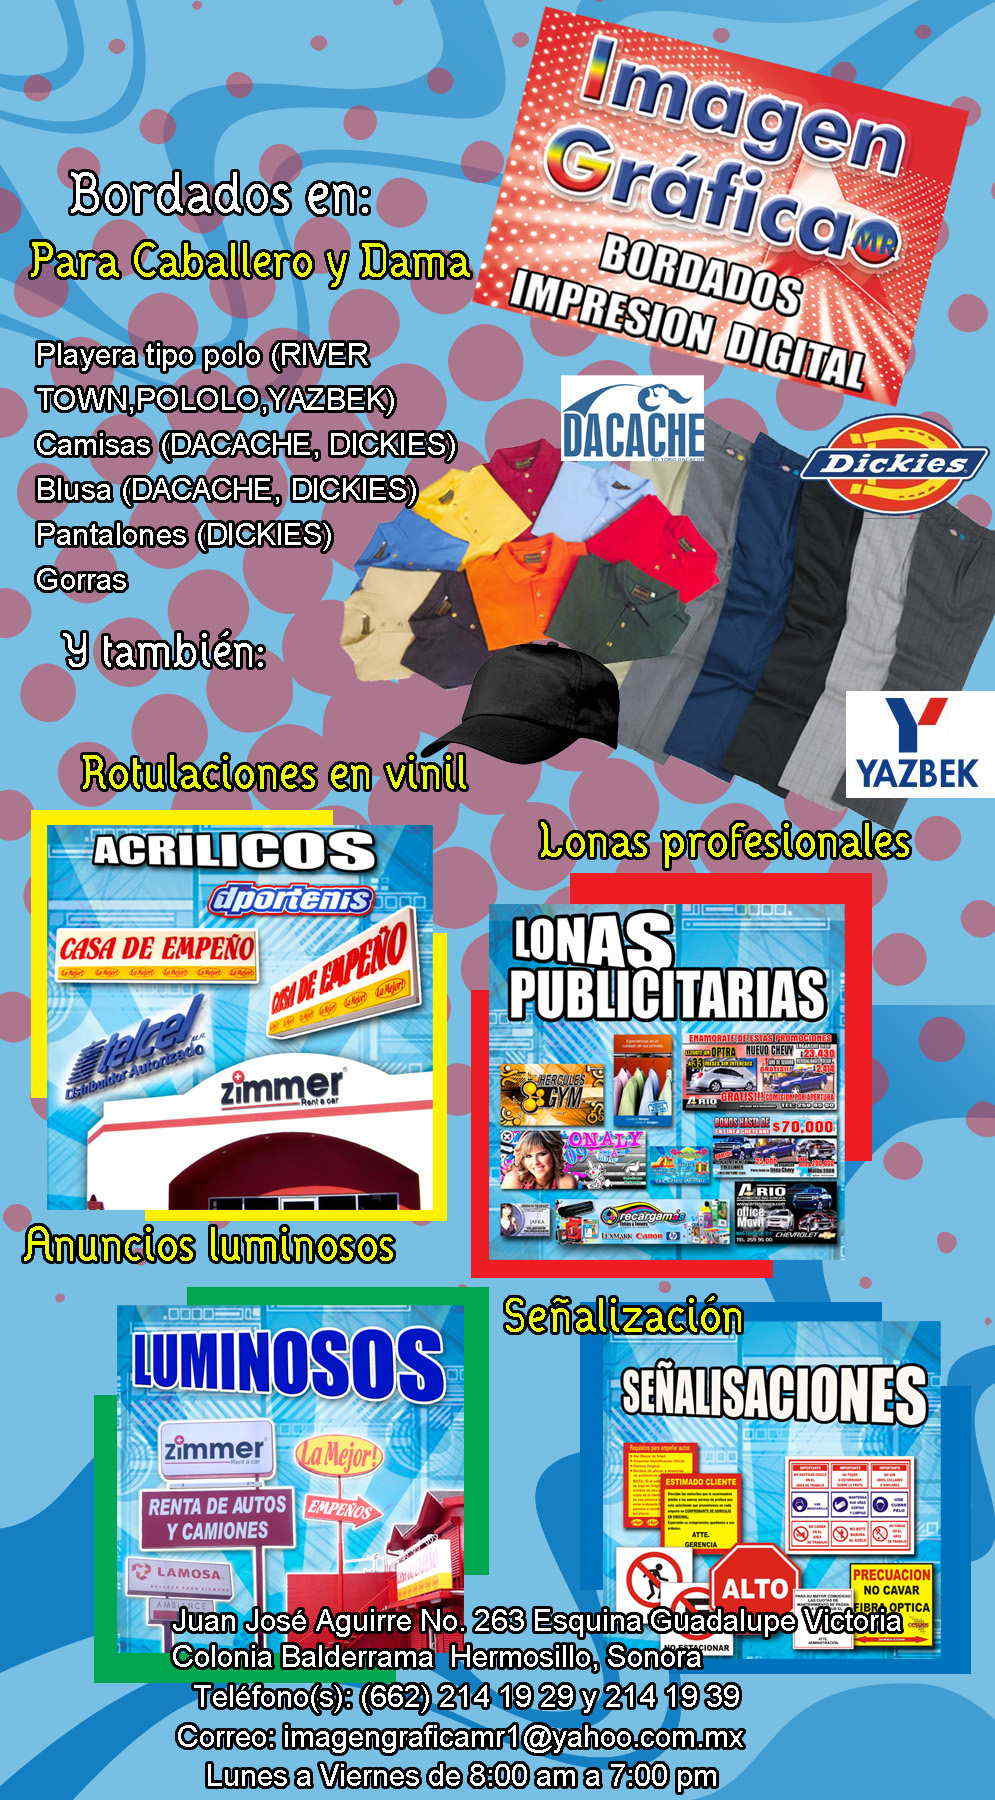 Imagen Grafica MR-Bordados y venta de uniformes